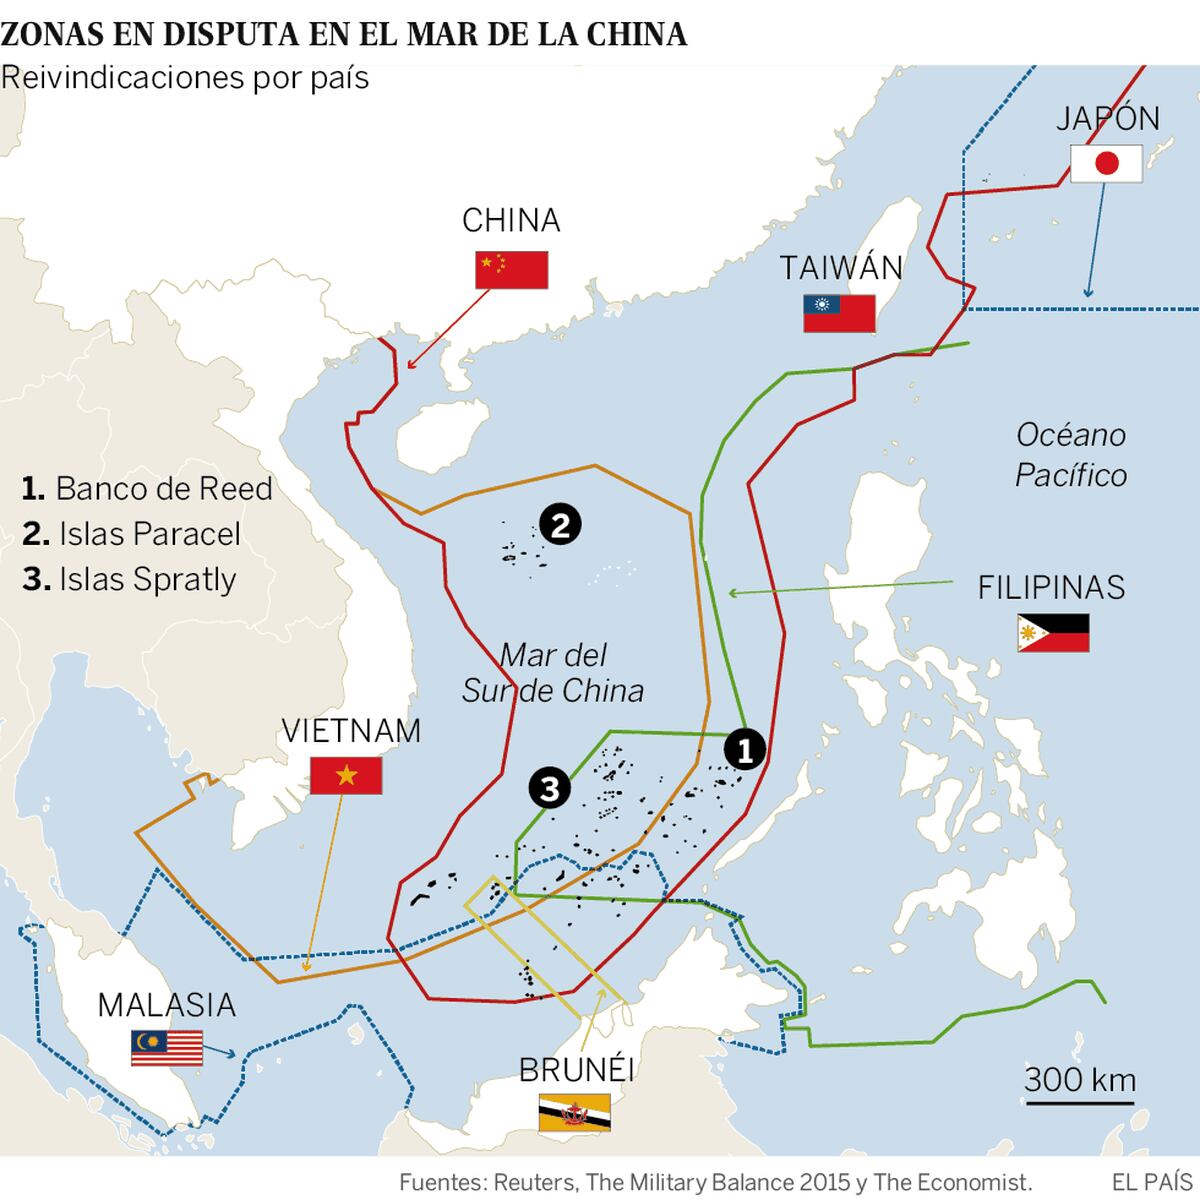 Islas Spratly: La Haya deja a China sin base legal para su expansionismo  marítimo | Internacional | EL PAÍS